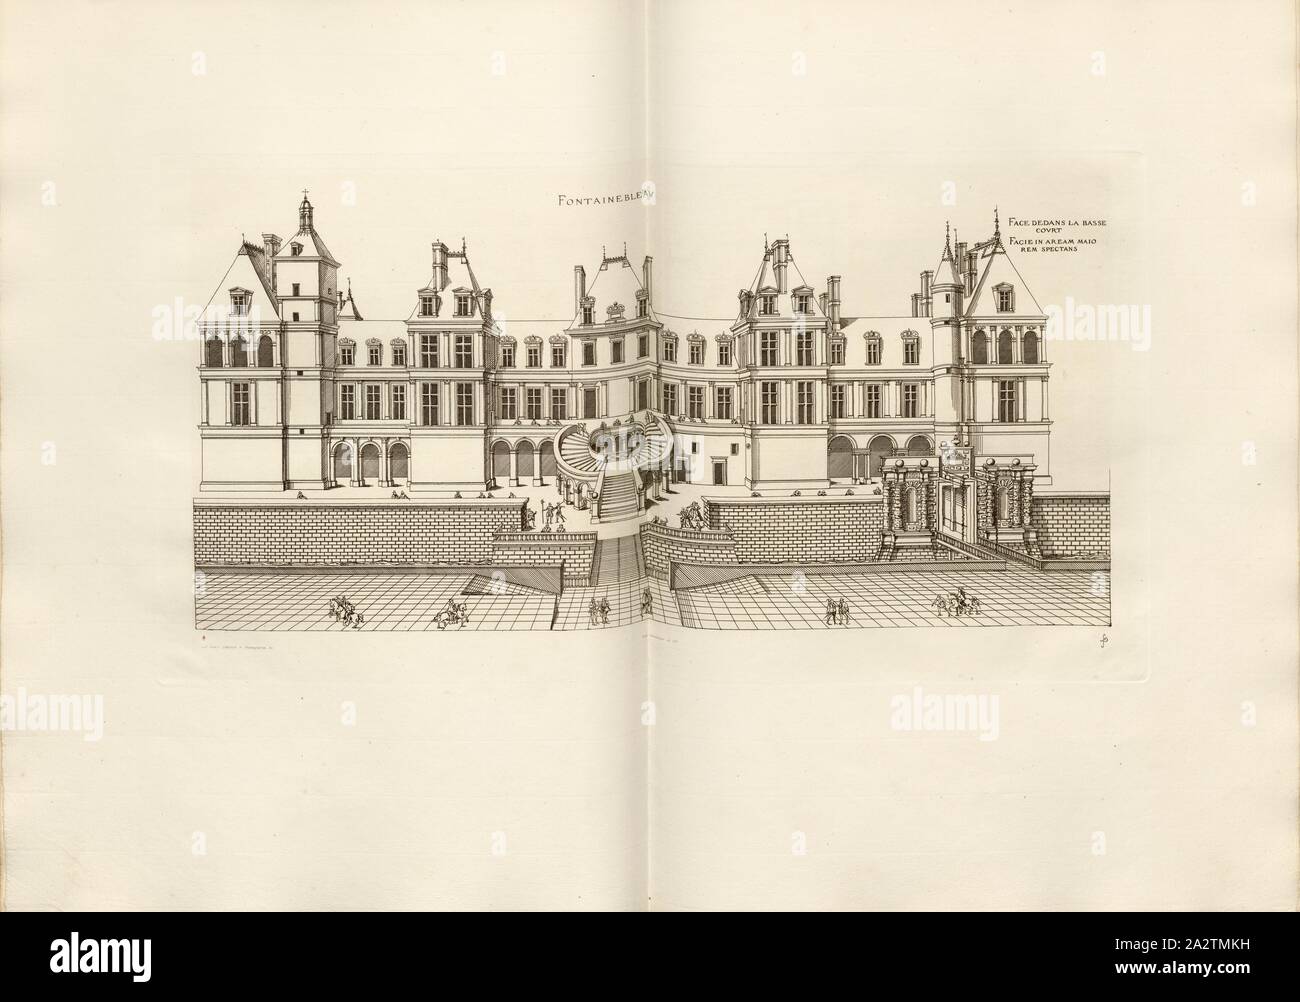 Fontainebleau. Di fronte al tribunale inferiore, Château de Fontainebleau in Francia, firmato: FD; Imp. Lemercier et Cie, A. Lévy (ed.), Fig. 16, Cerceau, Jacques Androuet du (CANC.); Faure-Dujarric, Pierre-Lucien (sc.); Lemercier (imp.); Levy, A. (ed.), 1868, Jacques Androuet du Cerceau; Hippolyte A. Destailleur: Les plus eccellenti bastiments de France. Parigi: A. Lévy, Libraire-Editeur, M DCCC LXVIII - M DCCC LXX. [1868-1870 Foto Stock